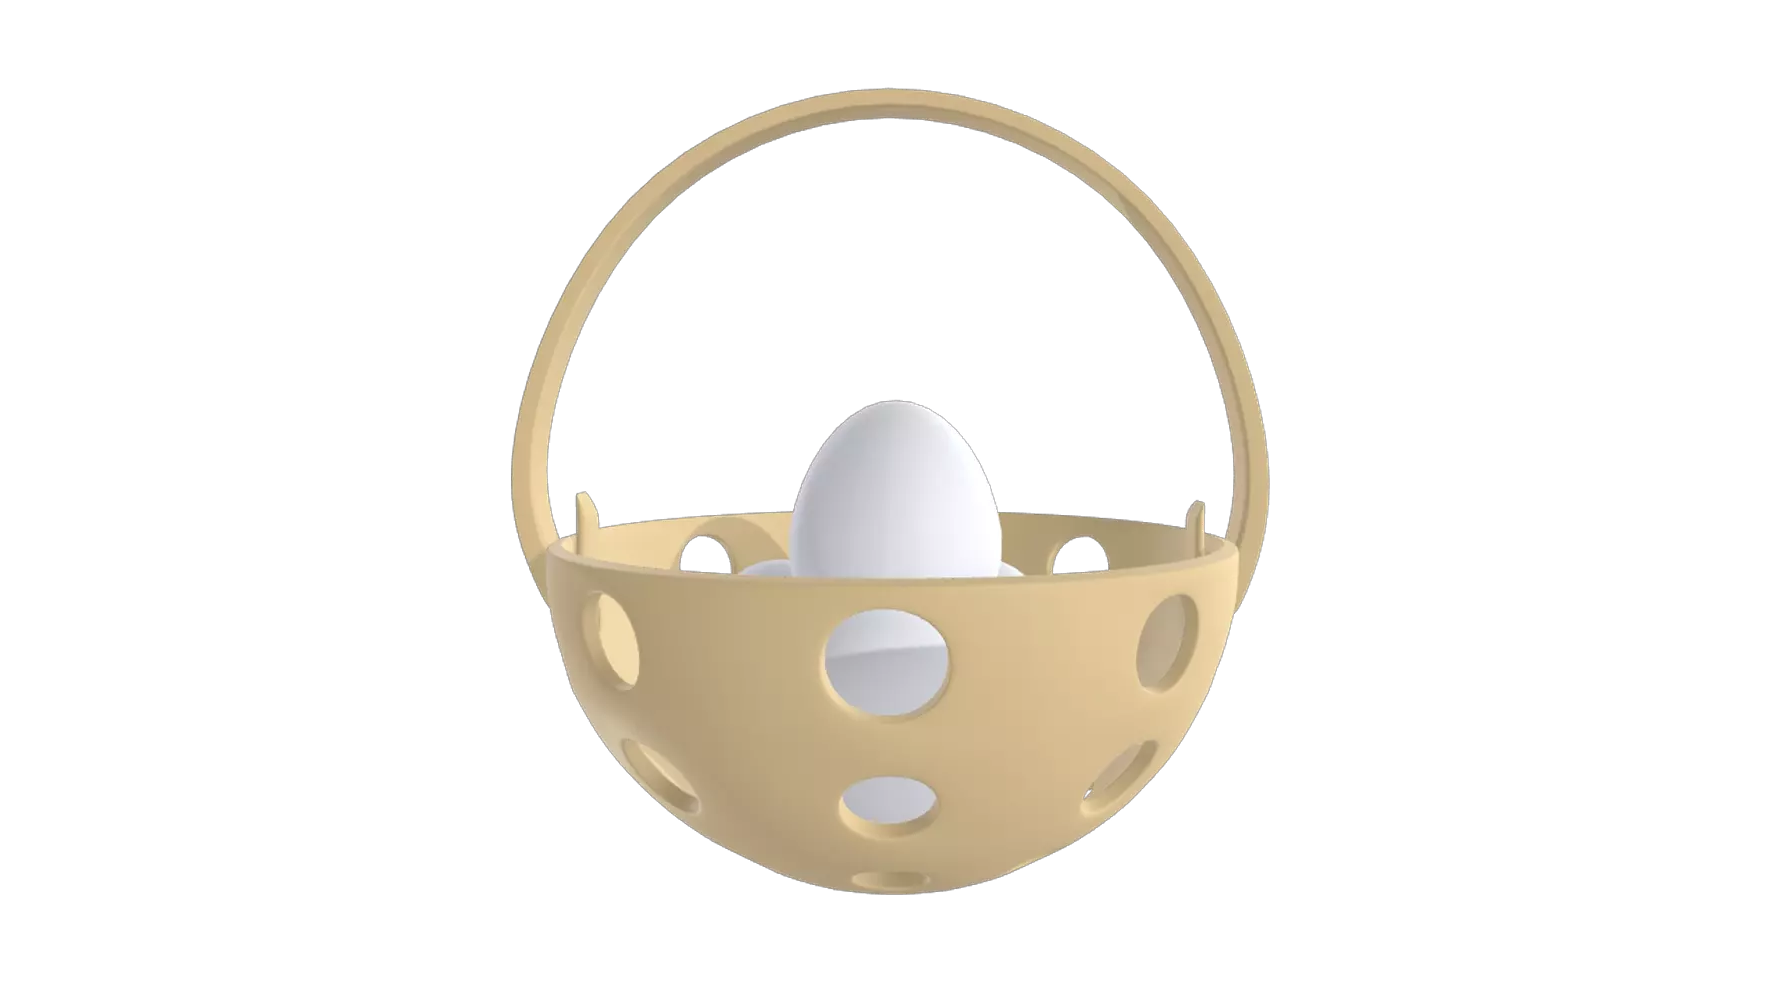 Egg Basket 3D Graphic